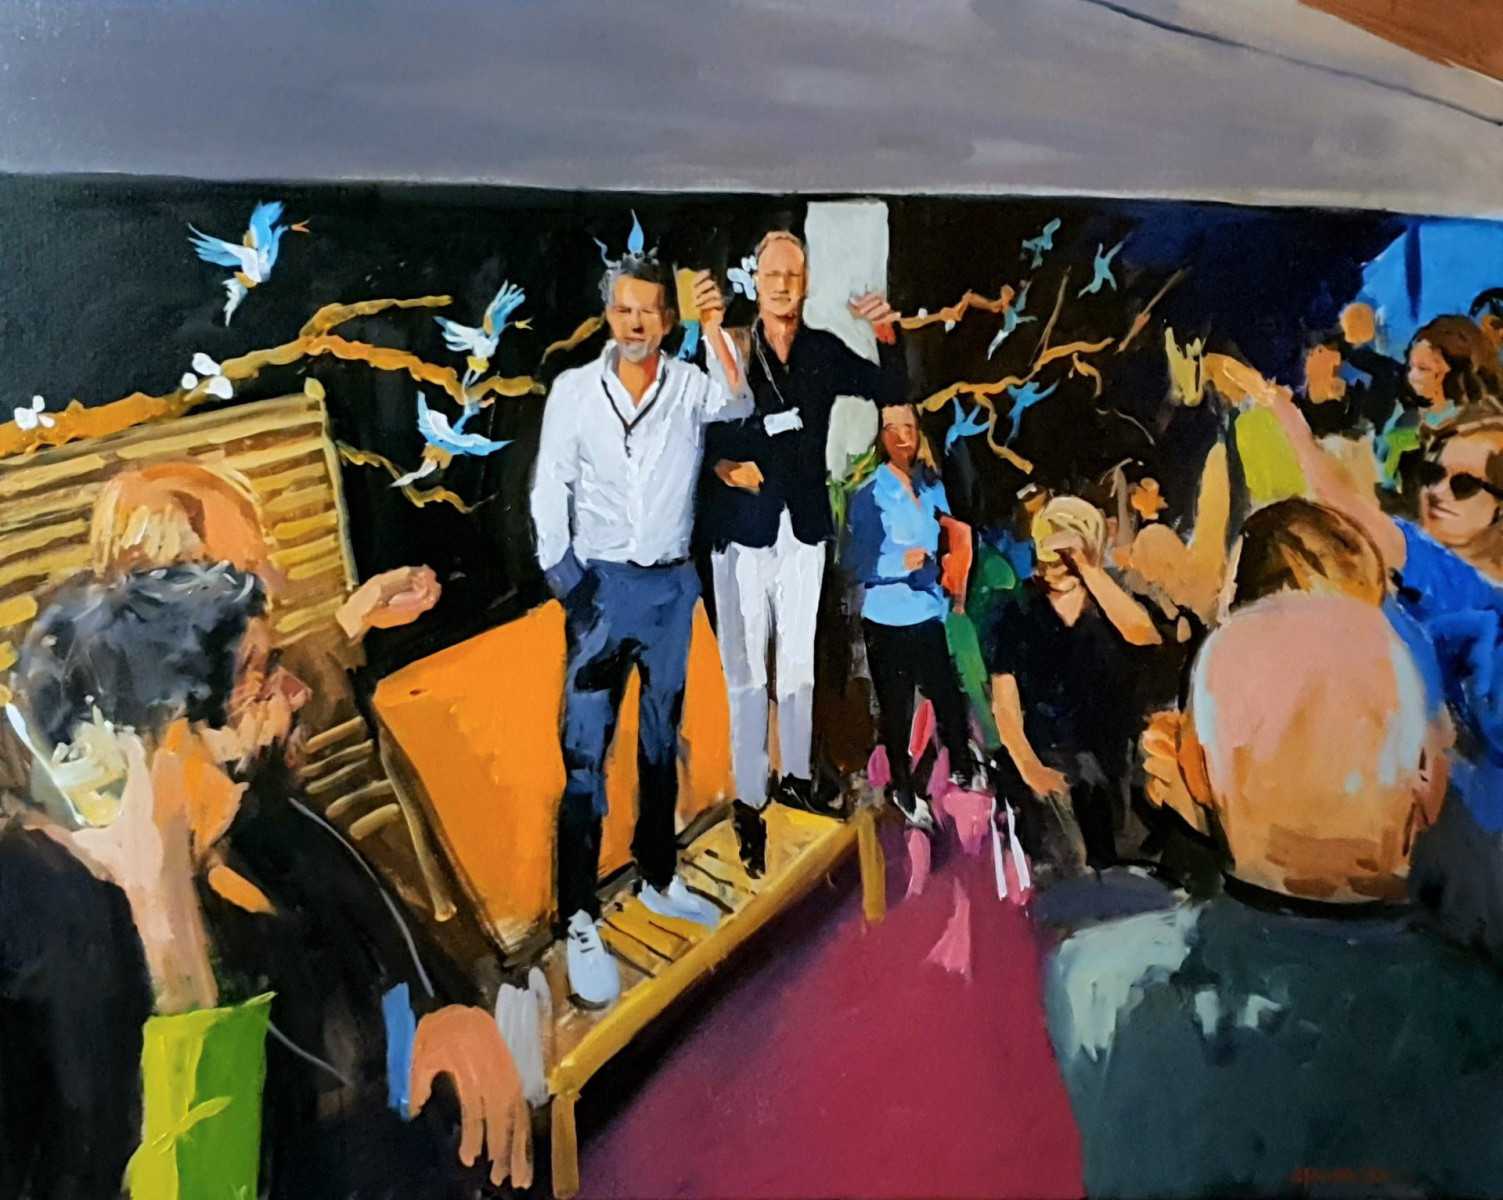 Rob Jacobs schildert doek van 80x100cm tijdens een feestelijke toost in Amsterdam, Noord-Holland.